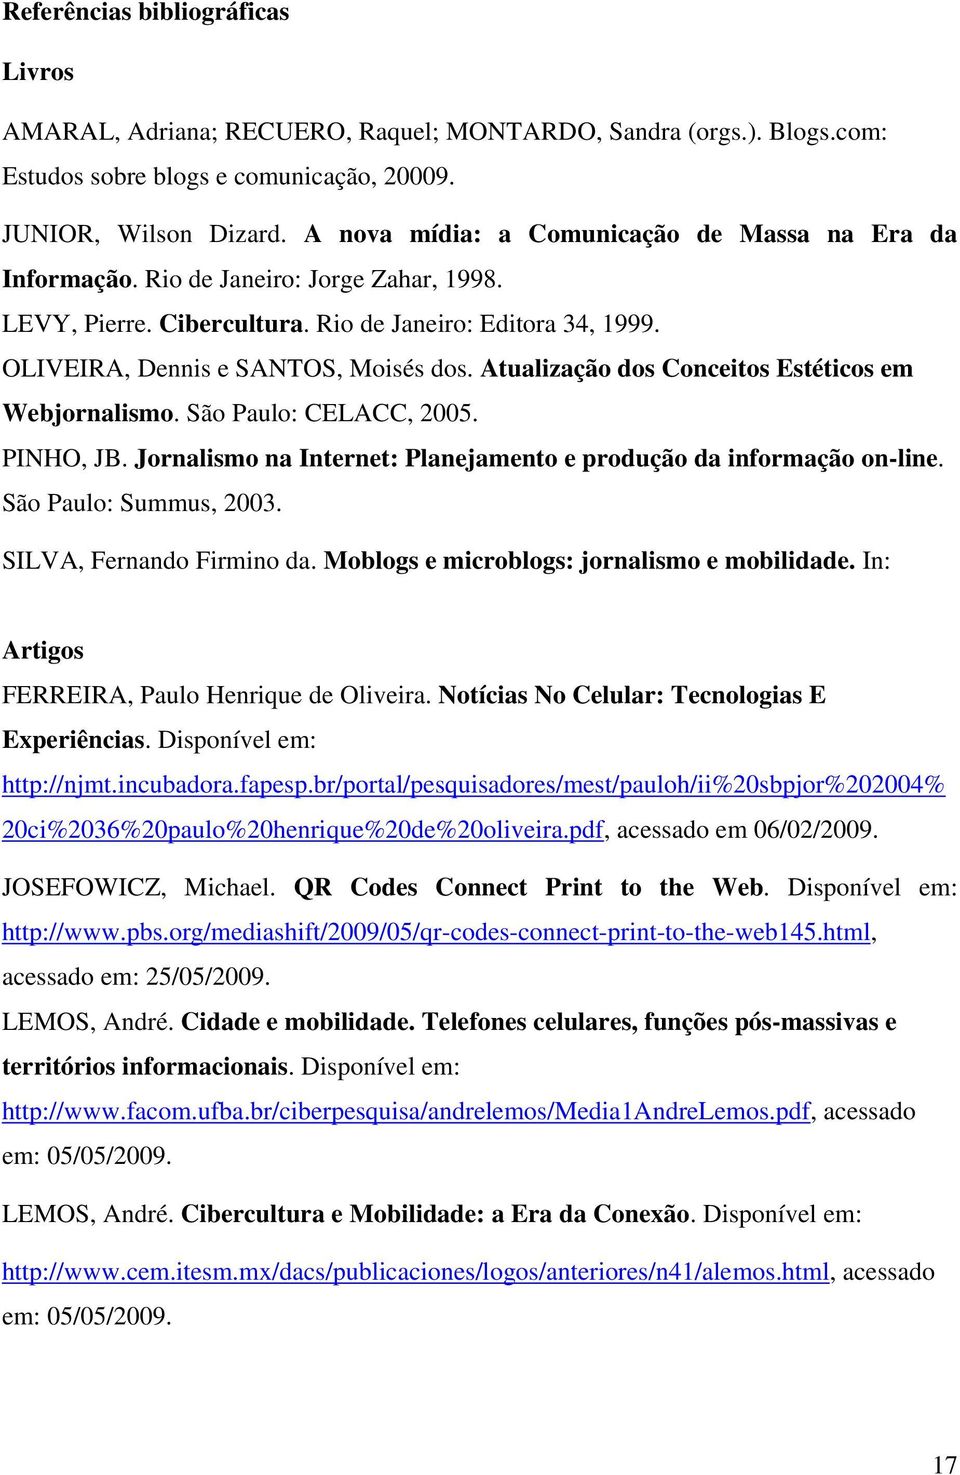 Atualização dos Conceitos Estéticos em Webjornalismo. São Paulo: CELACC, 2005. PINHO, JB. Jornalismo na Internet: Planejamento e produção da informação on-line. São Paulo: Summus, 2003.